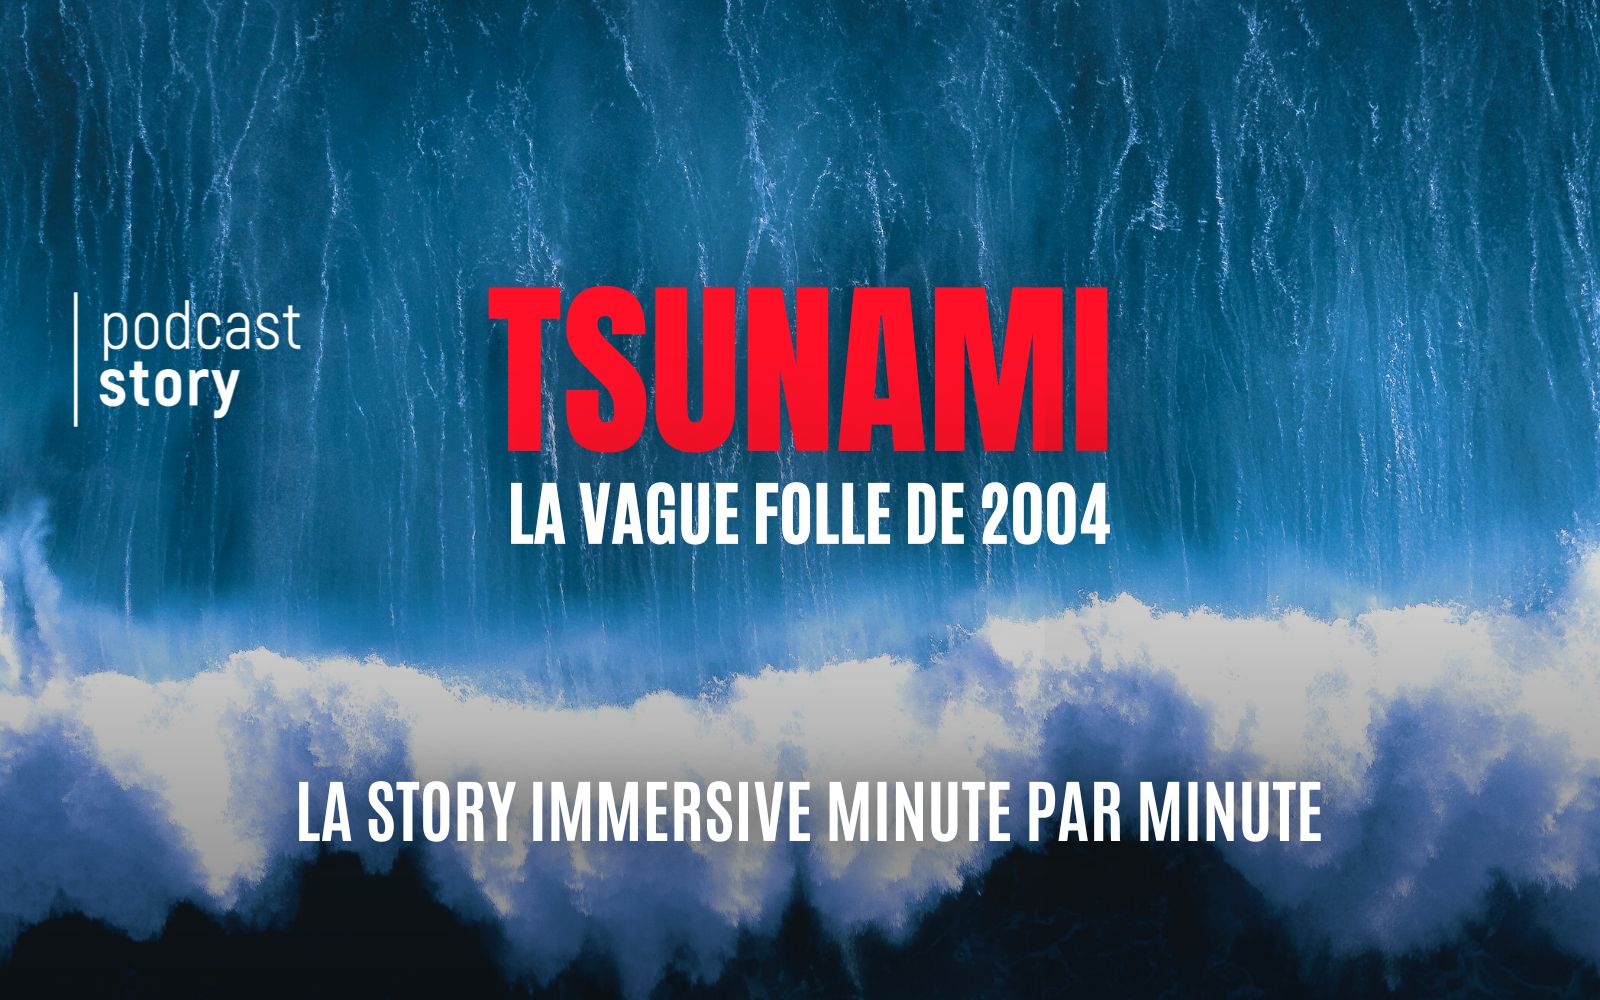 TSUNAMI, LA VAGUE FOLLE DE 2004 – MINUTE PAR MINUTE